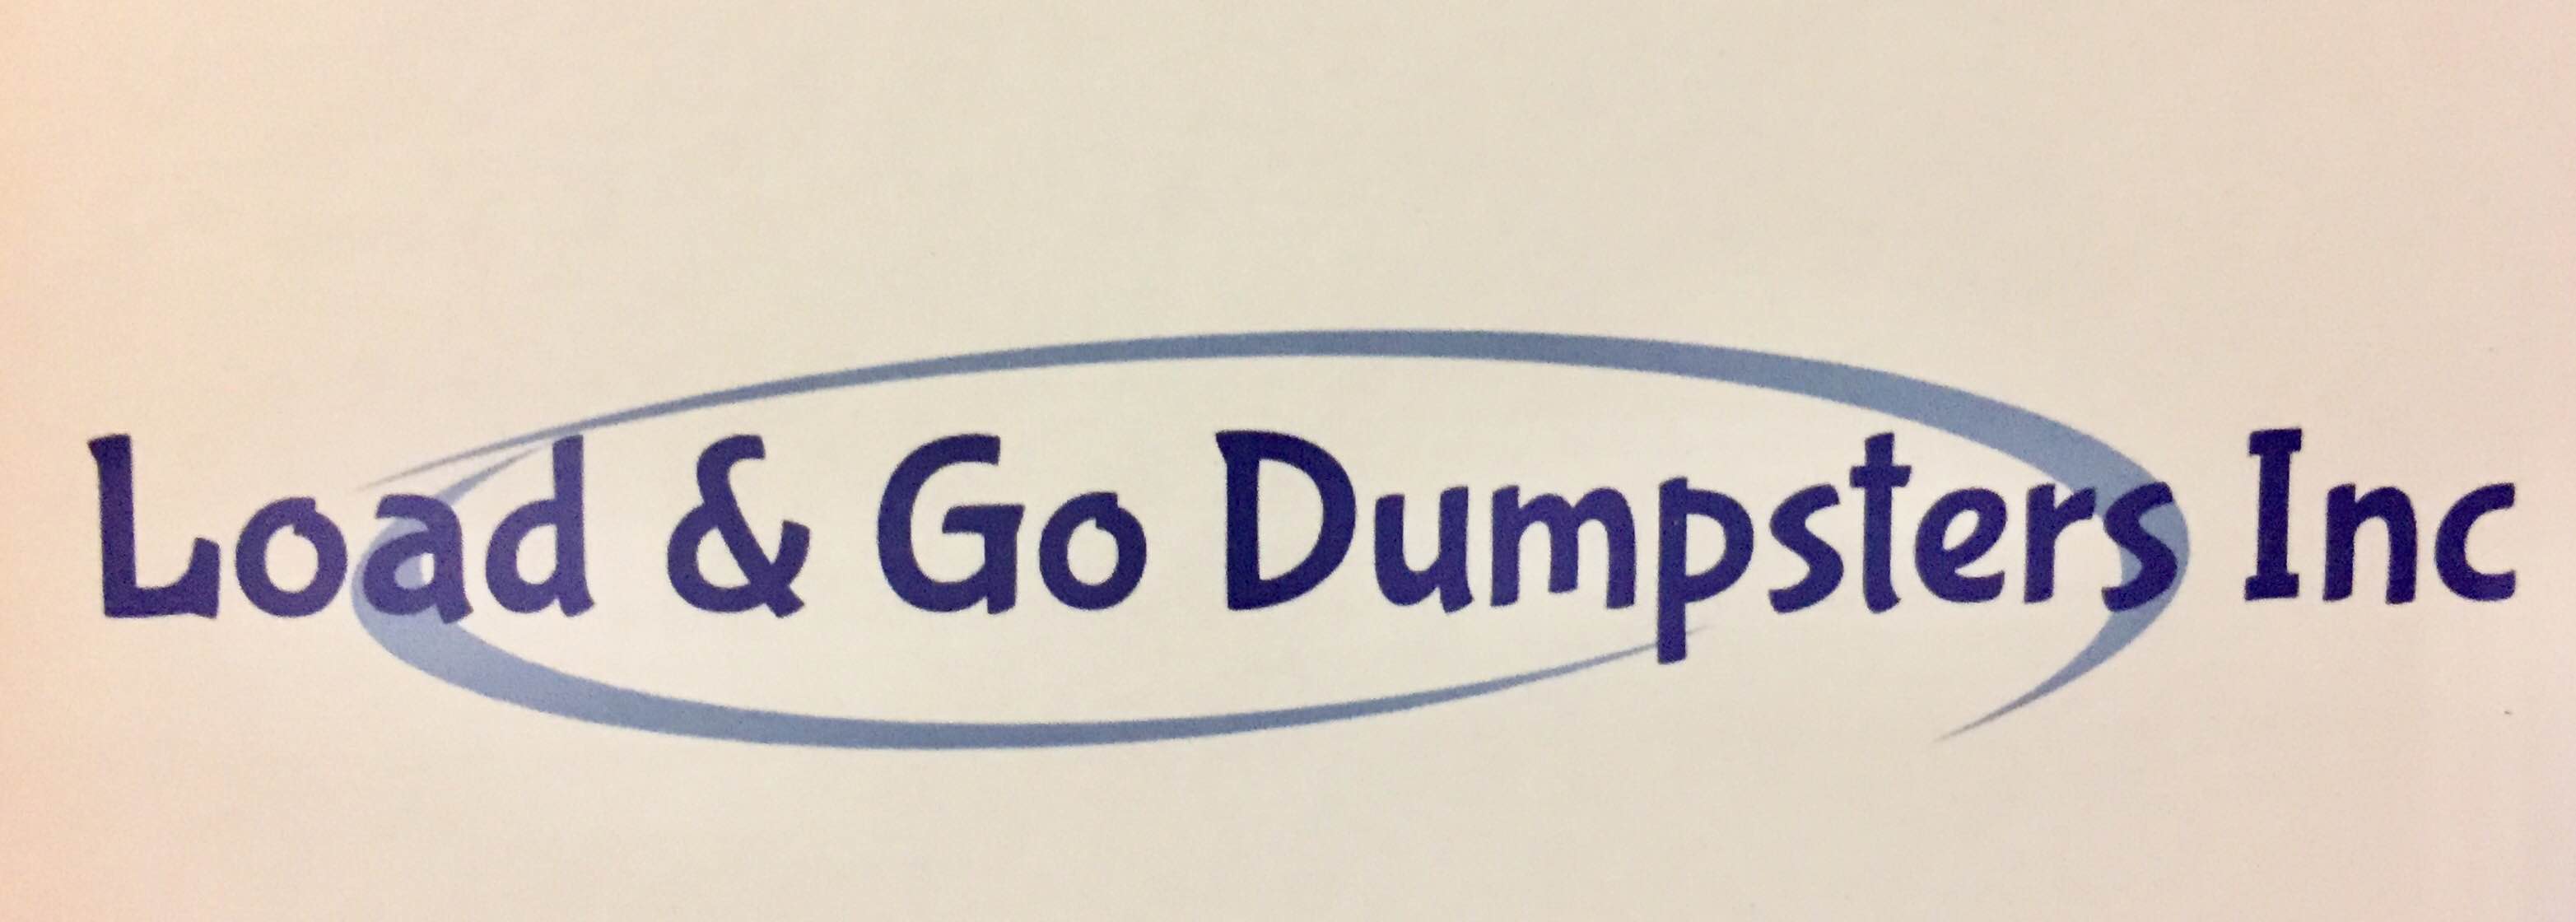 Load & Go Dumpsters, Inc. Logo